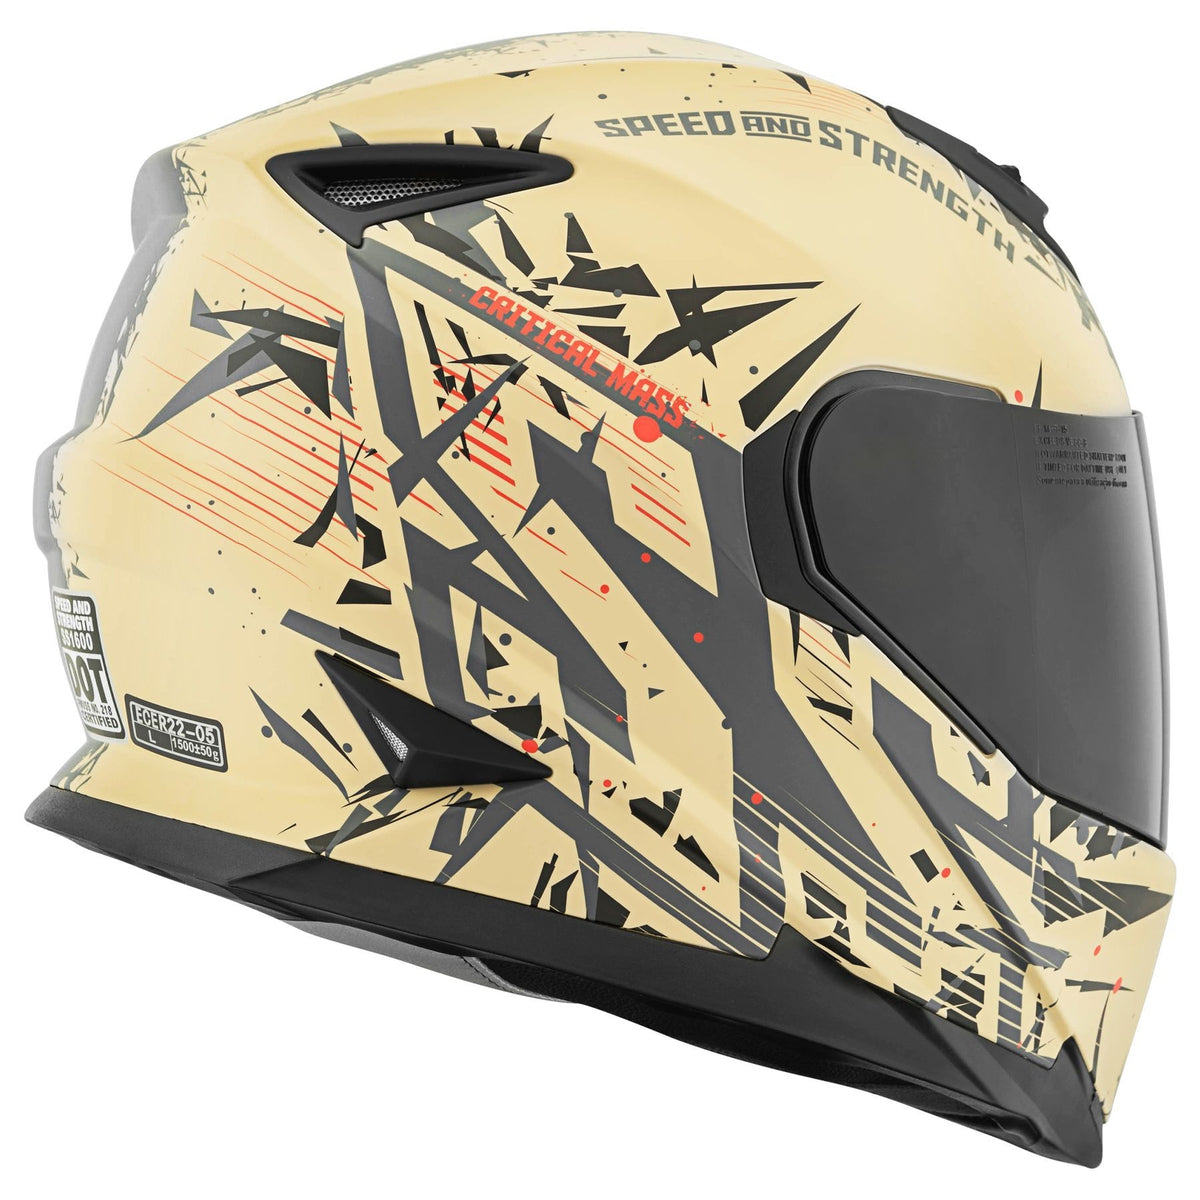 Speed and Strength SS1600 Critical Mass Helmet